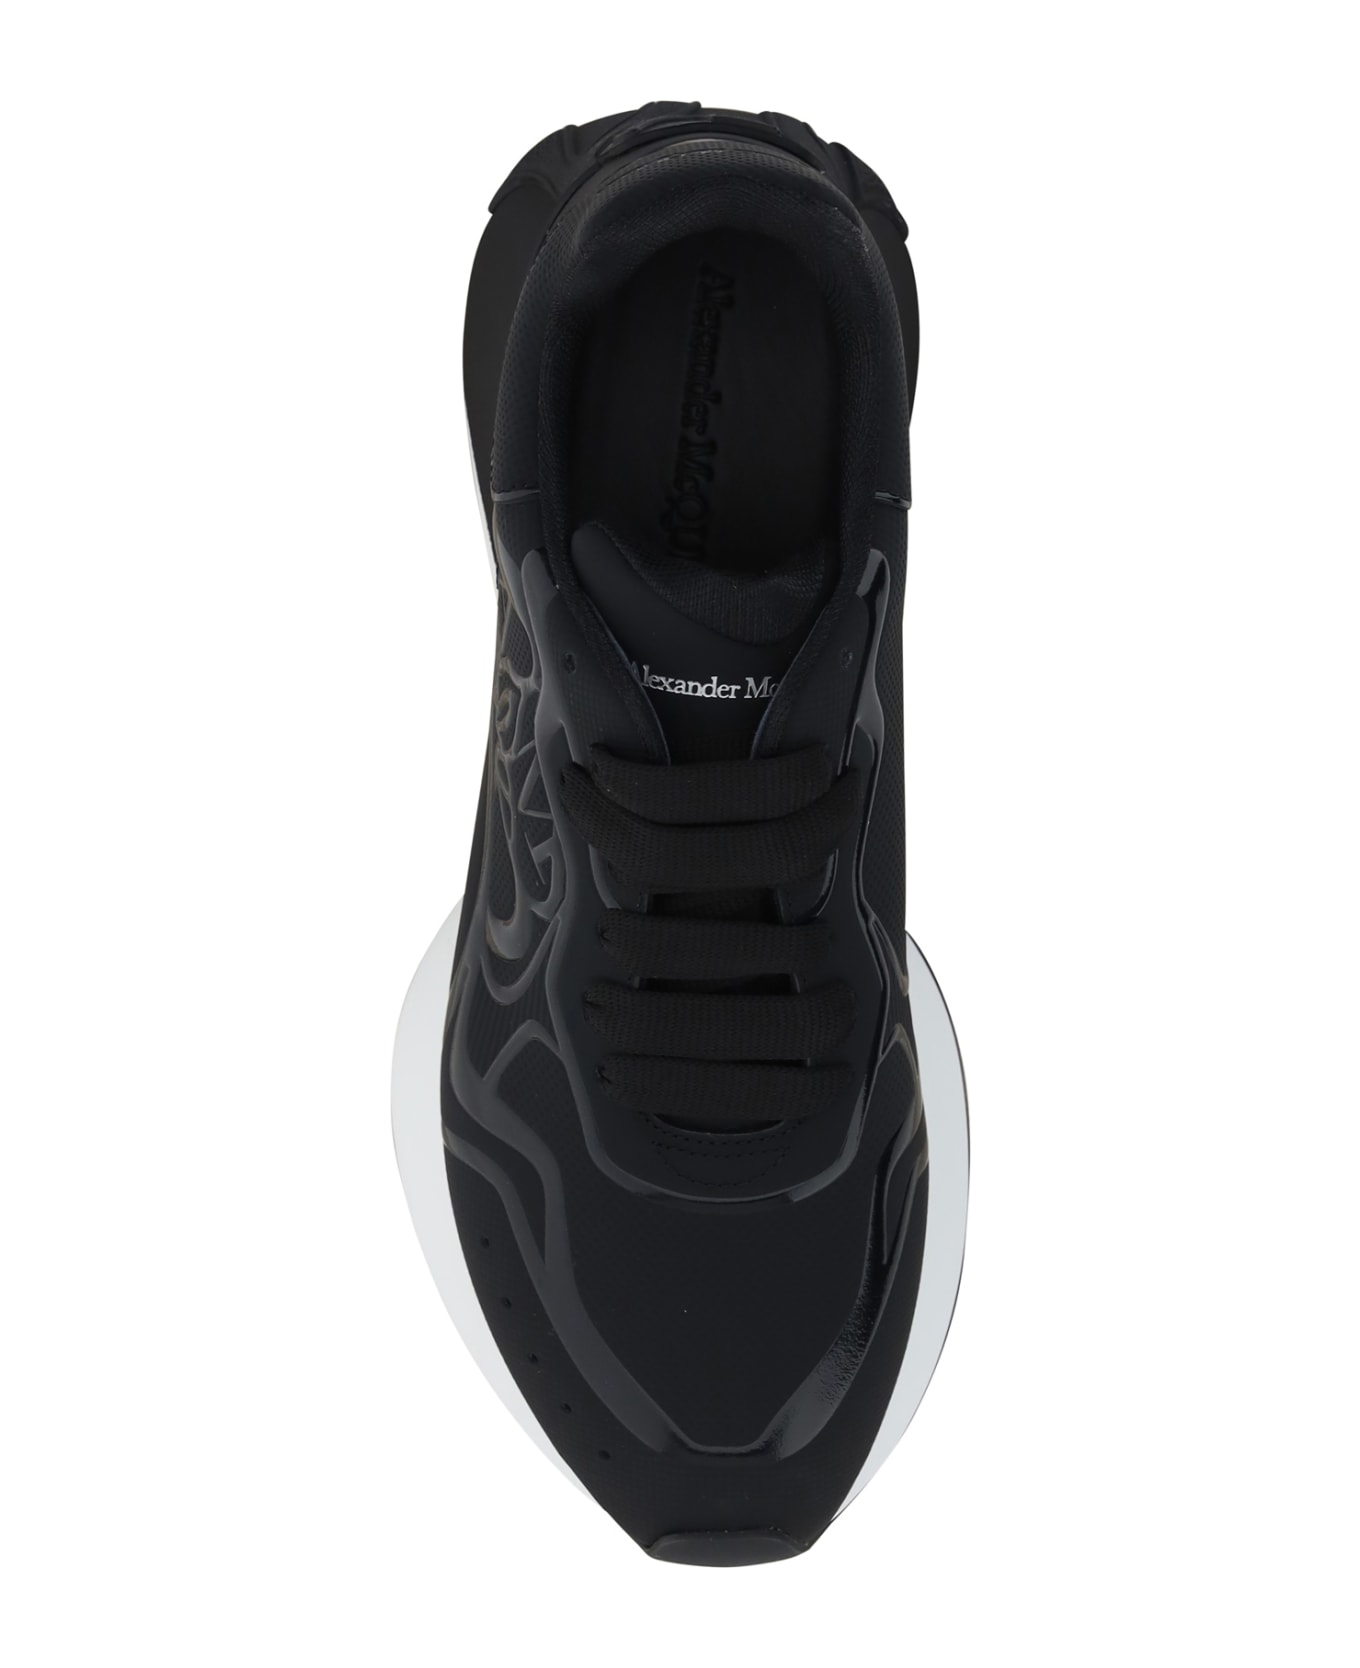 Alexander McQueen Sprint Runner Sneaker - Black/white